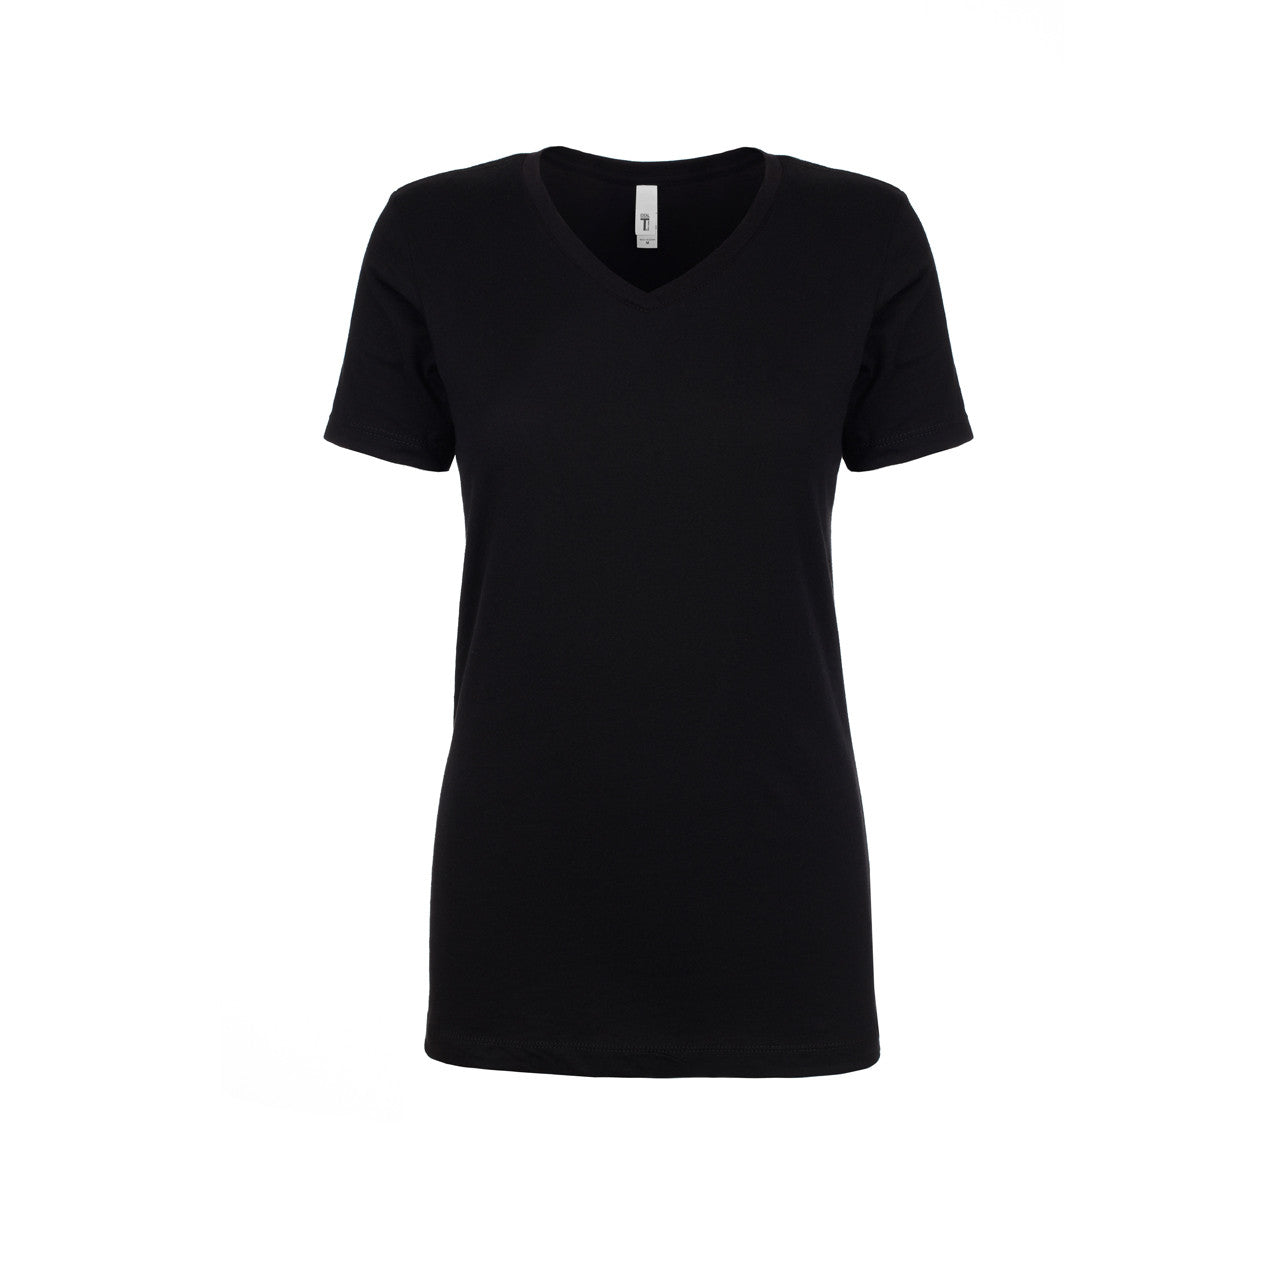 Women's Ideal V-Neck T-shirt - Next Level Australia